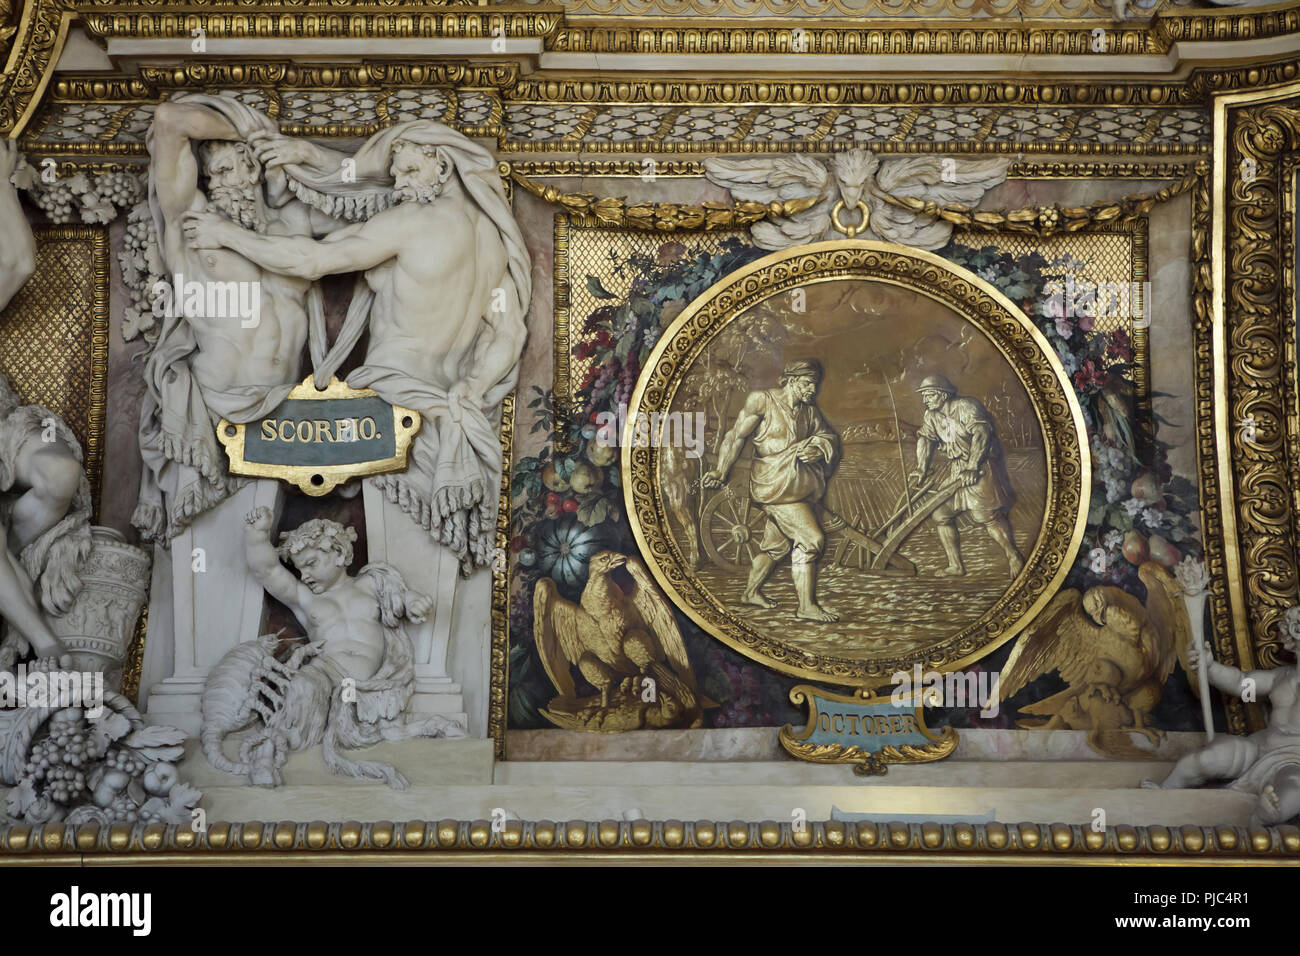 Décoration en stuc 'Scorpio' par le sculpteur français François Girardon et  la grisaille peinture 'Octobre' dans l'Apollo Galley (Galerie d'Apollon)  dans le palais du Louvre (Palais du Louvre) à Paris, France Photo